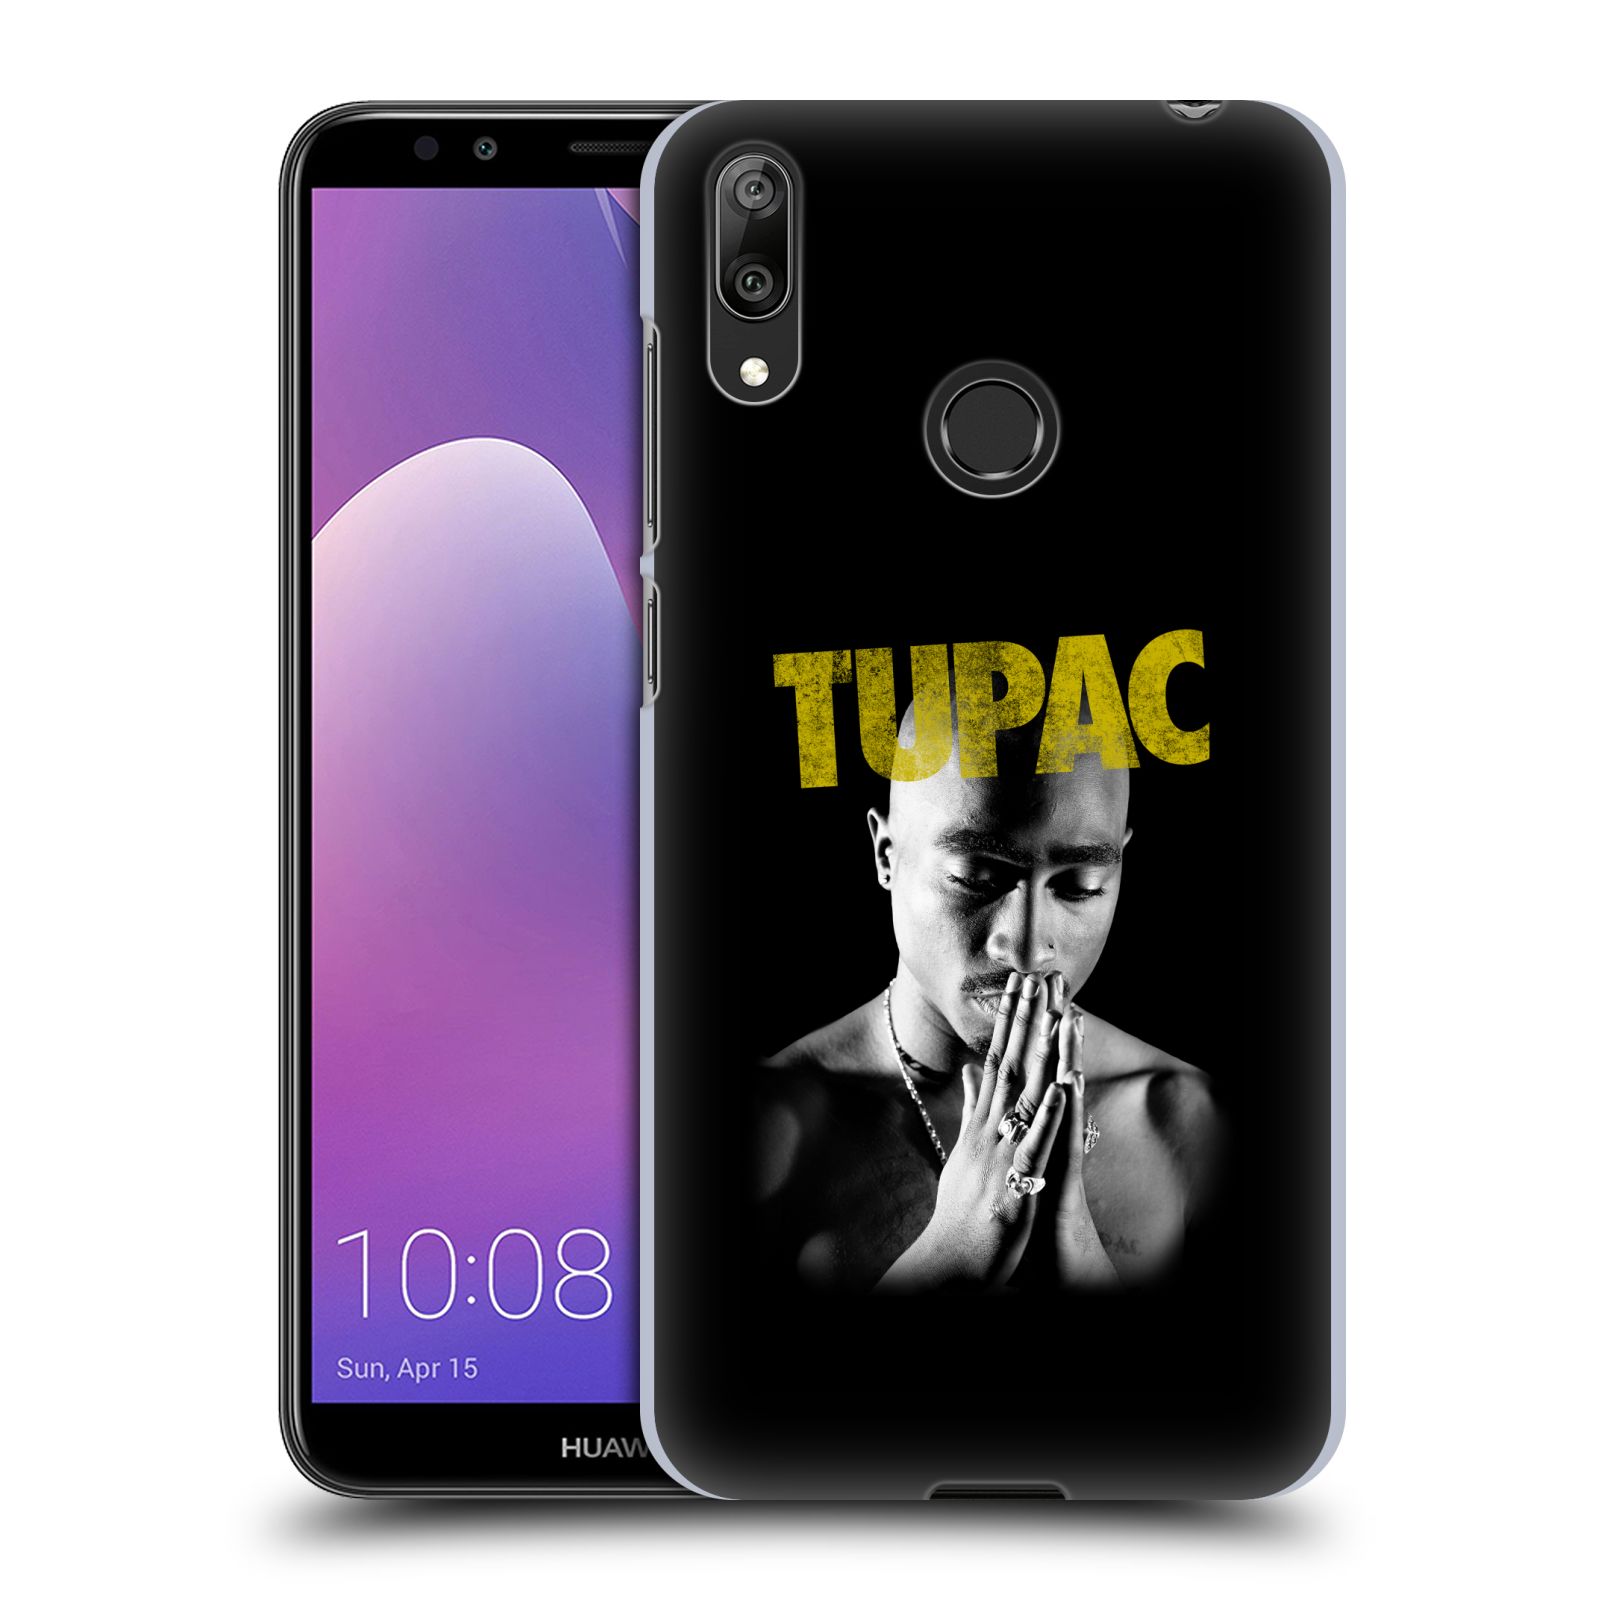 Pouzdro na mobil Huawei Y7 2019 - Head Case - Zpěvák rapper Tupac Shakur 2Pac zlatý nadpis